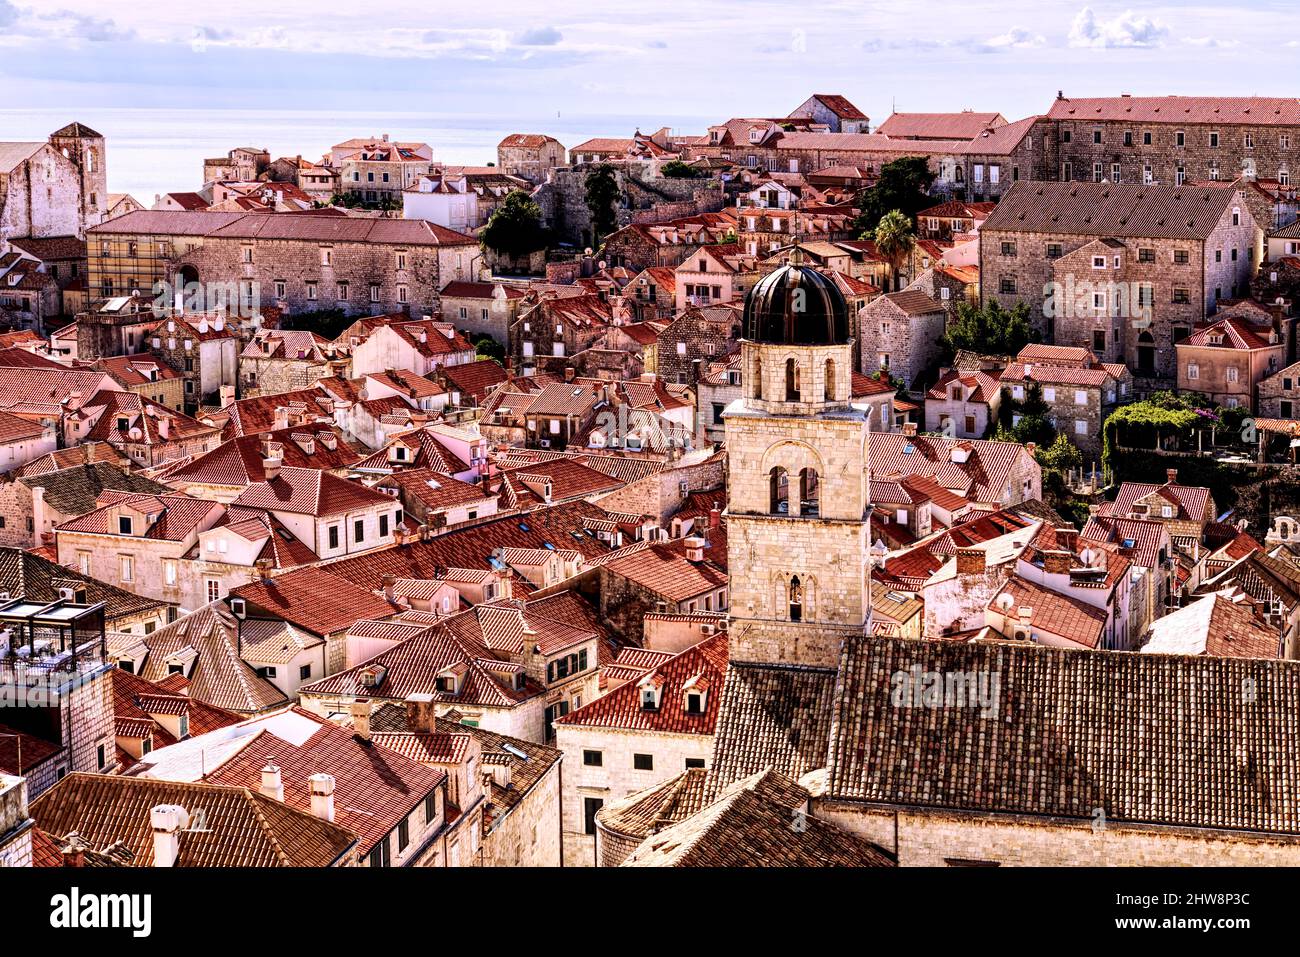 Vista aerea dalle mura della città dei tetti di terracotta rossa della città vecchia di Dubrovnik, Croazia Foto Stock